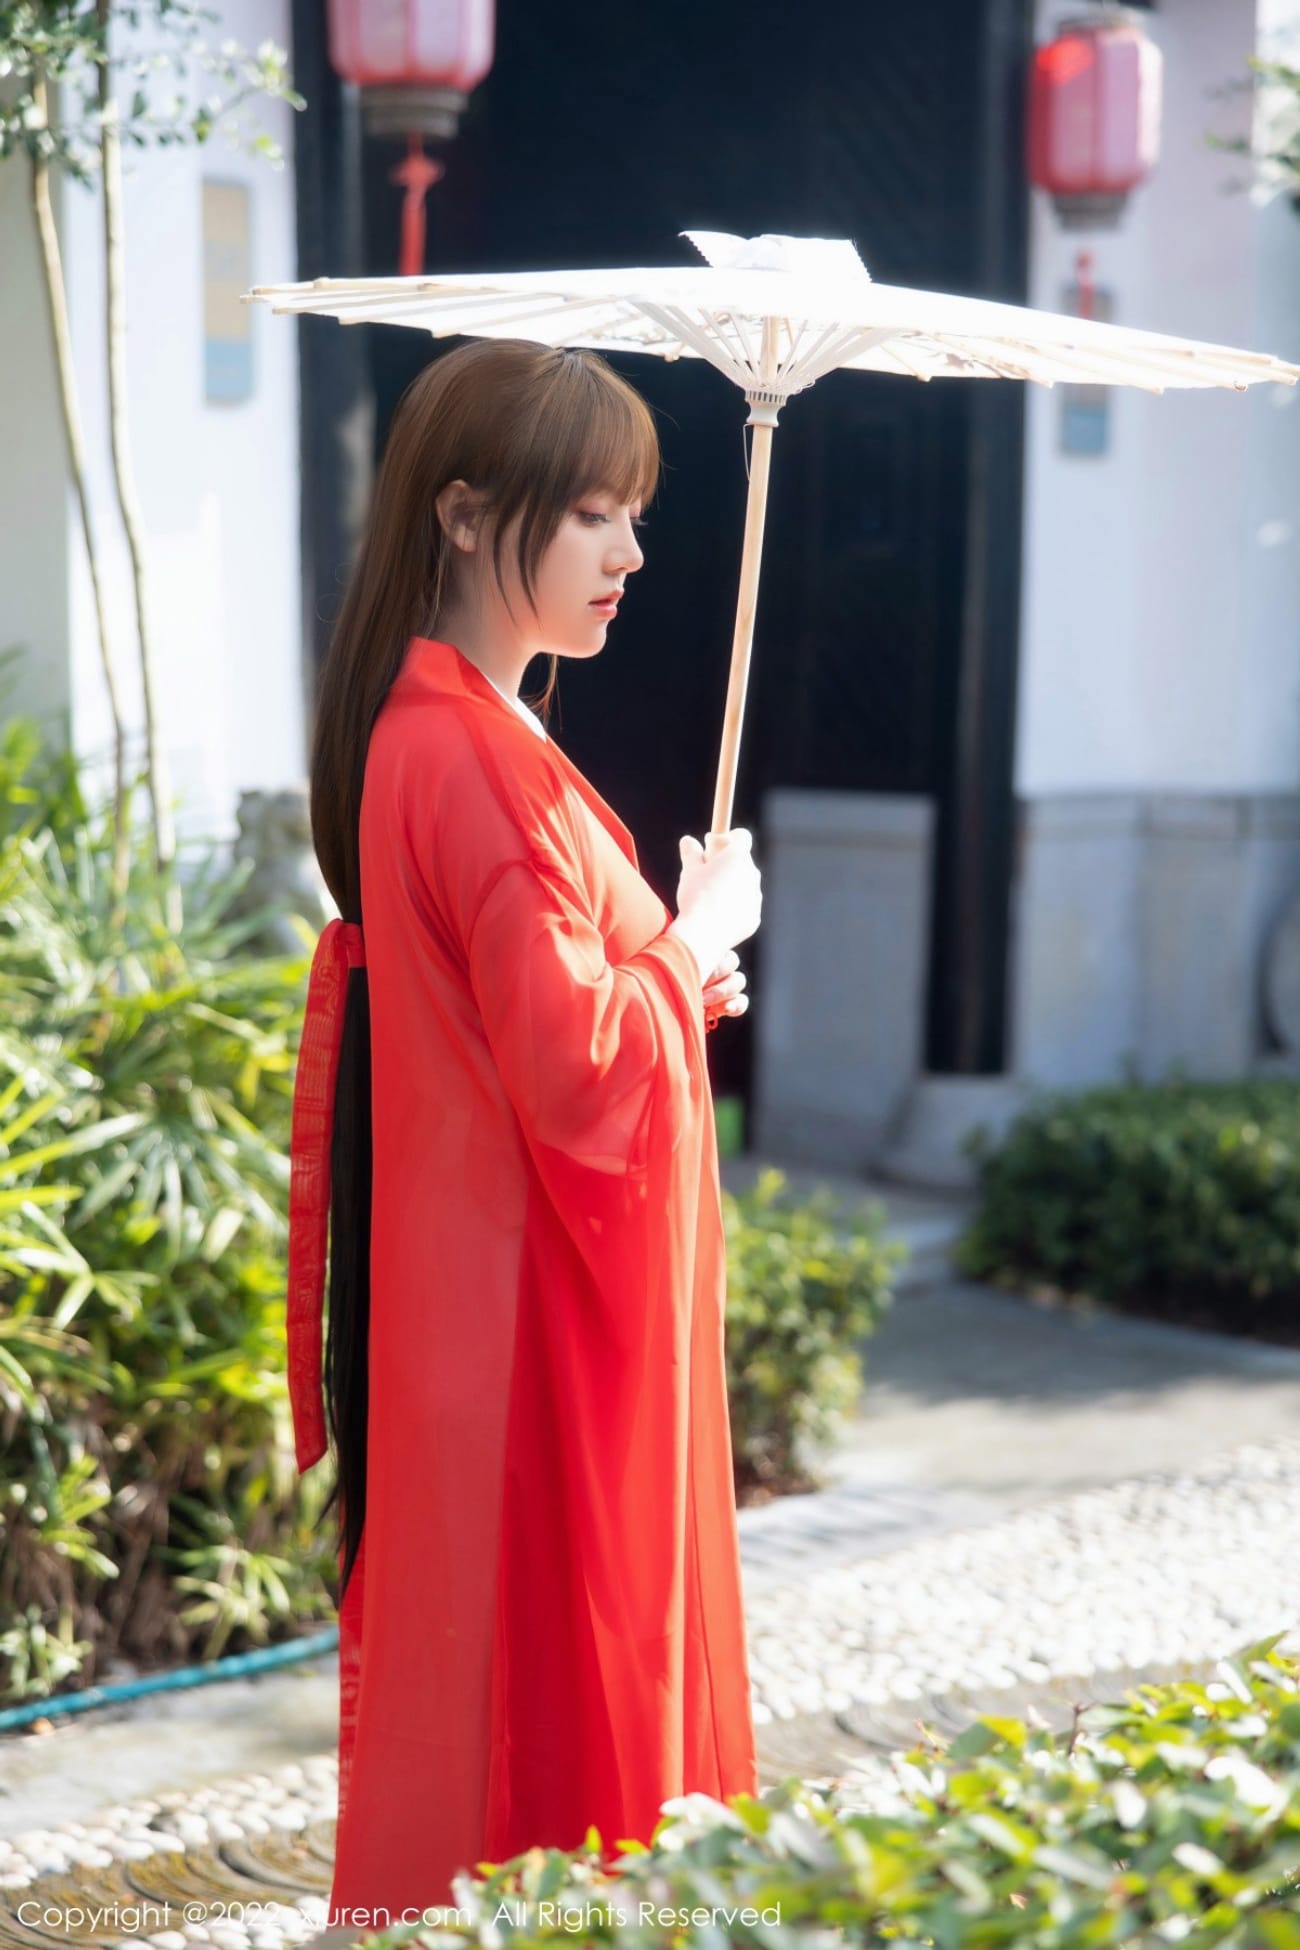 模特豆瓣酱红色古装服饰演绎唐朝风韵性感写真